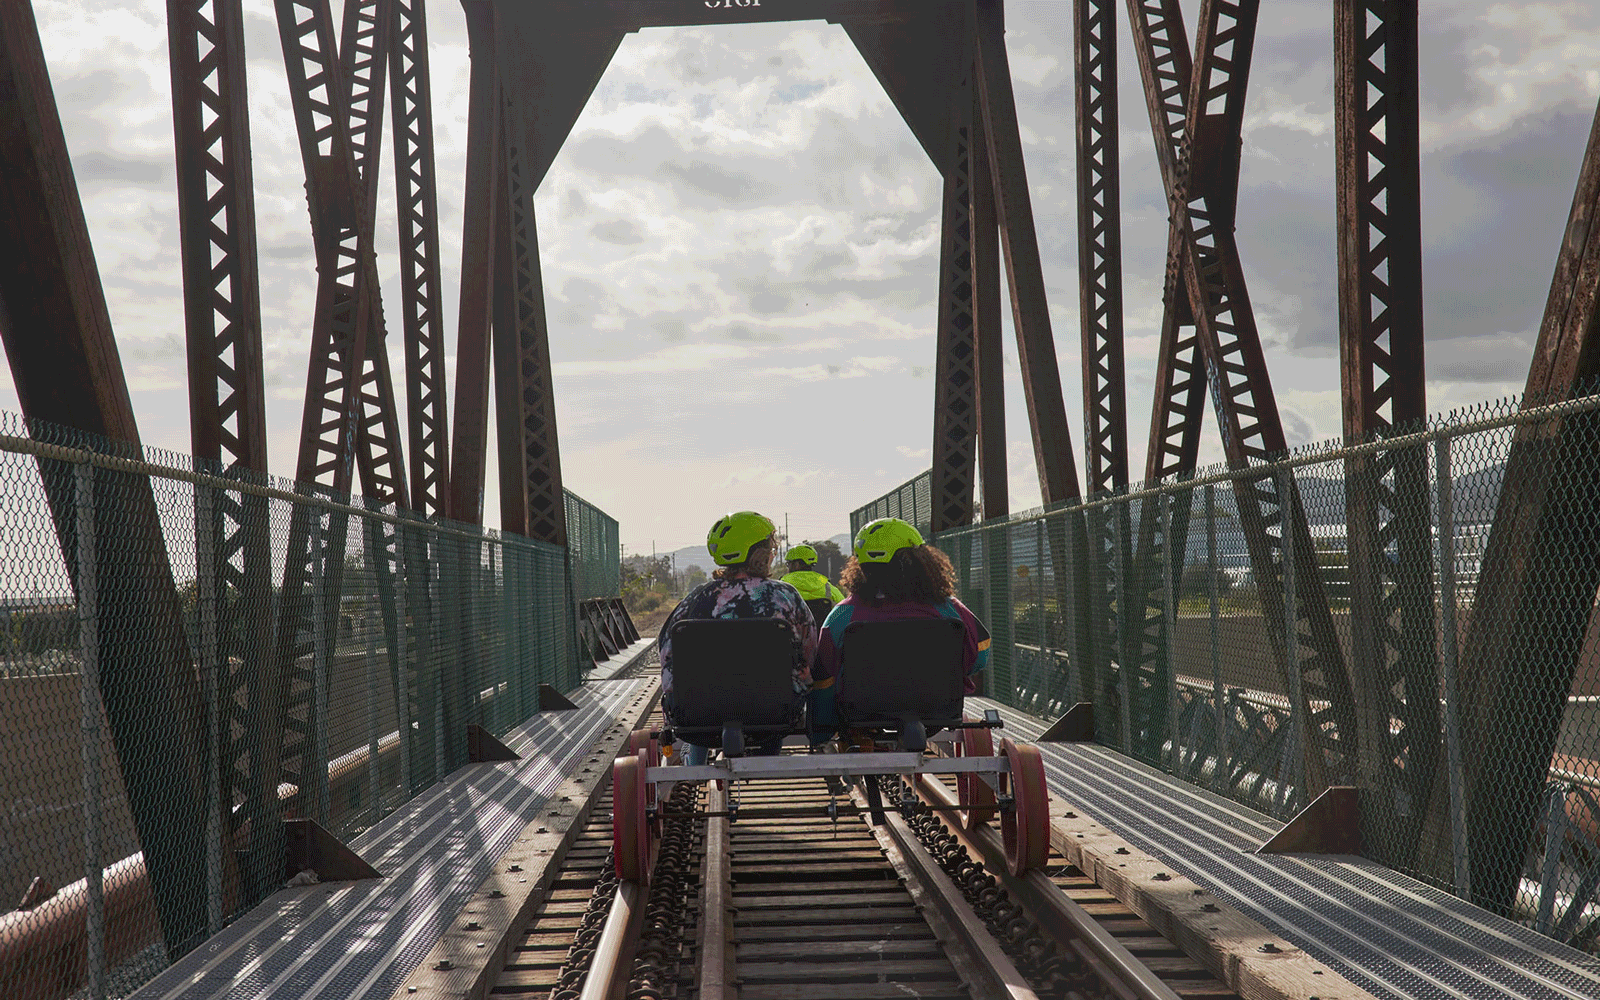 Bir köprüden demiryolu bisikletiyle geçerken arkadan görünen iki kişinin gif'i.